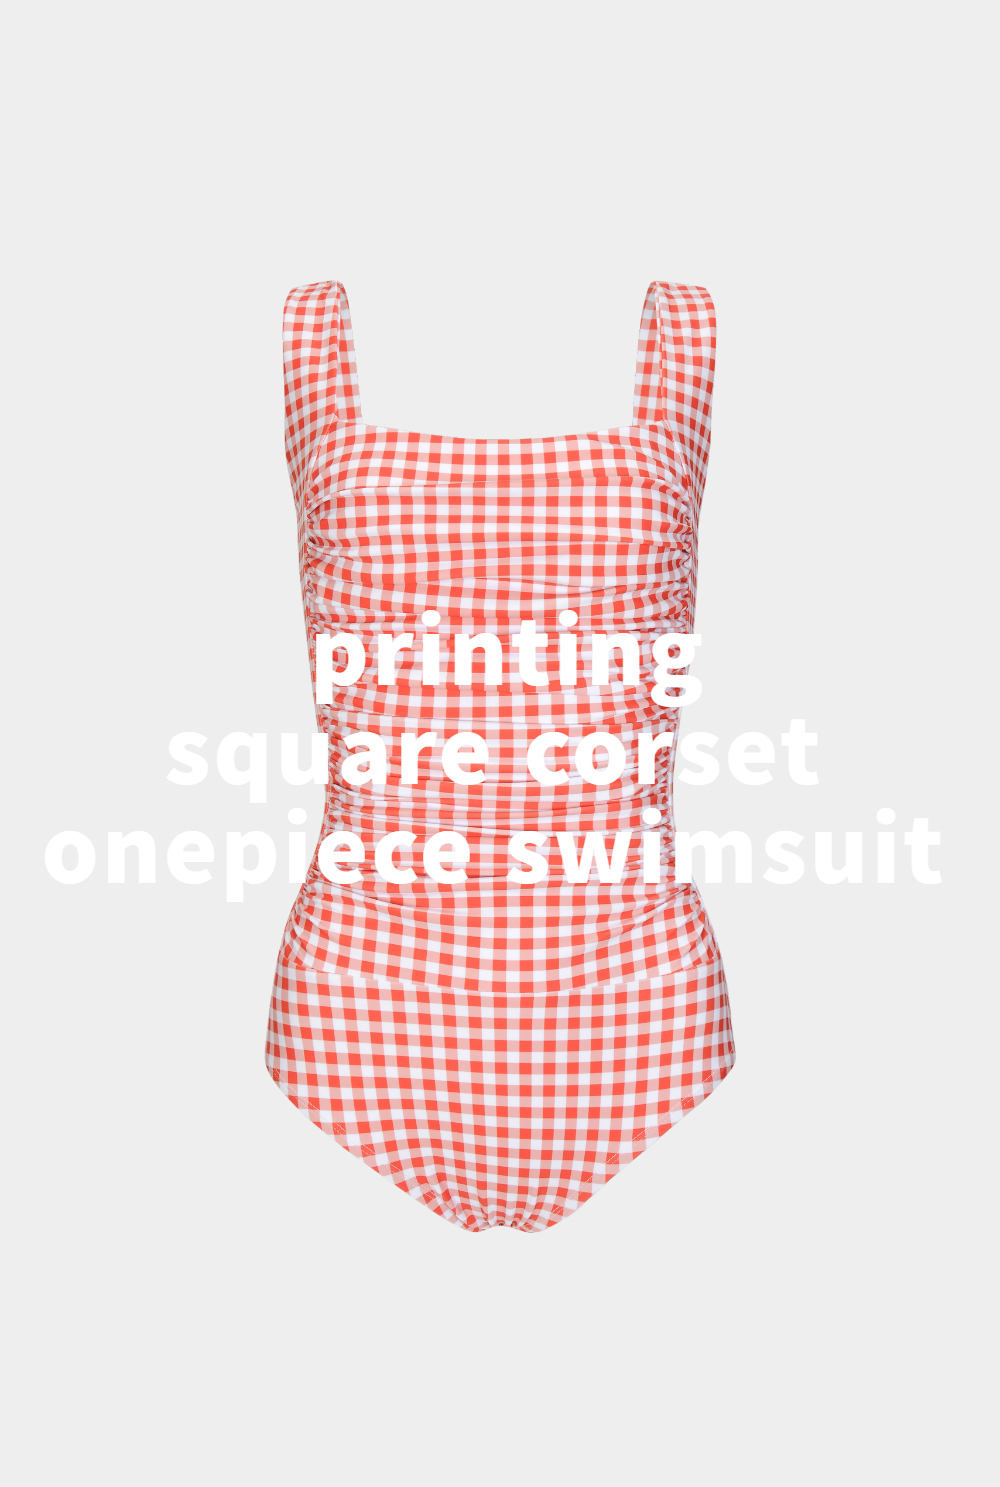 swim wear/inner wear baby pink color image-S1L3